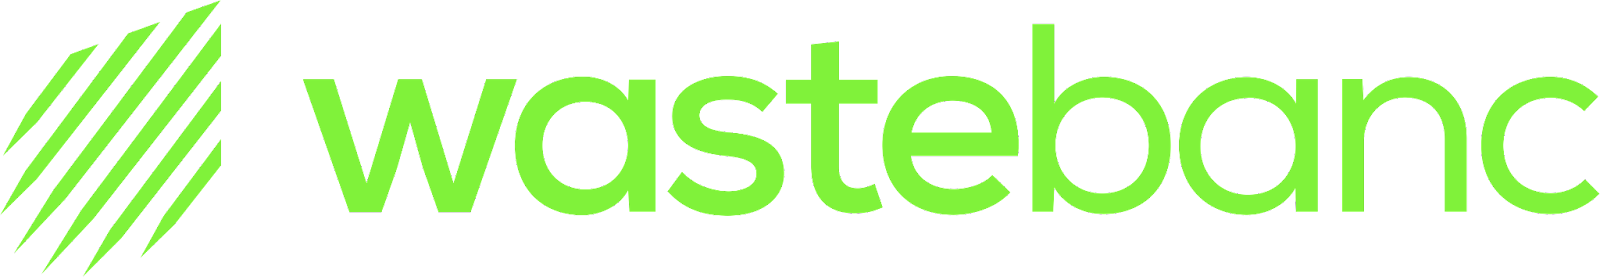 Wastebanc Logo